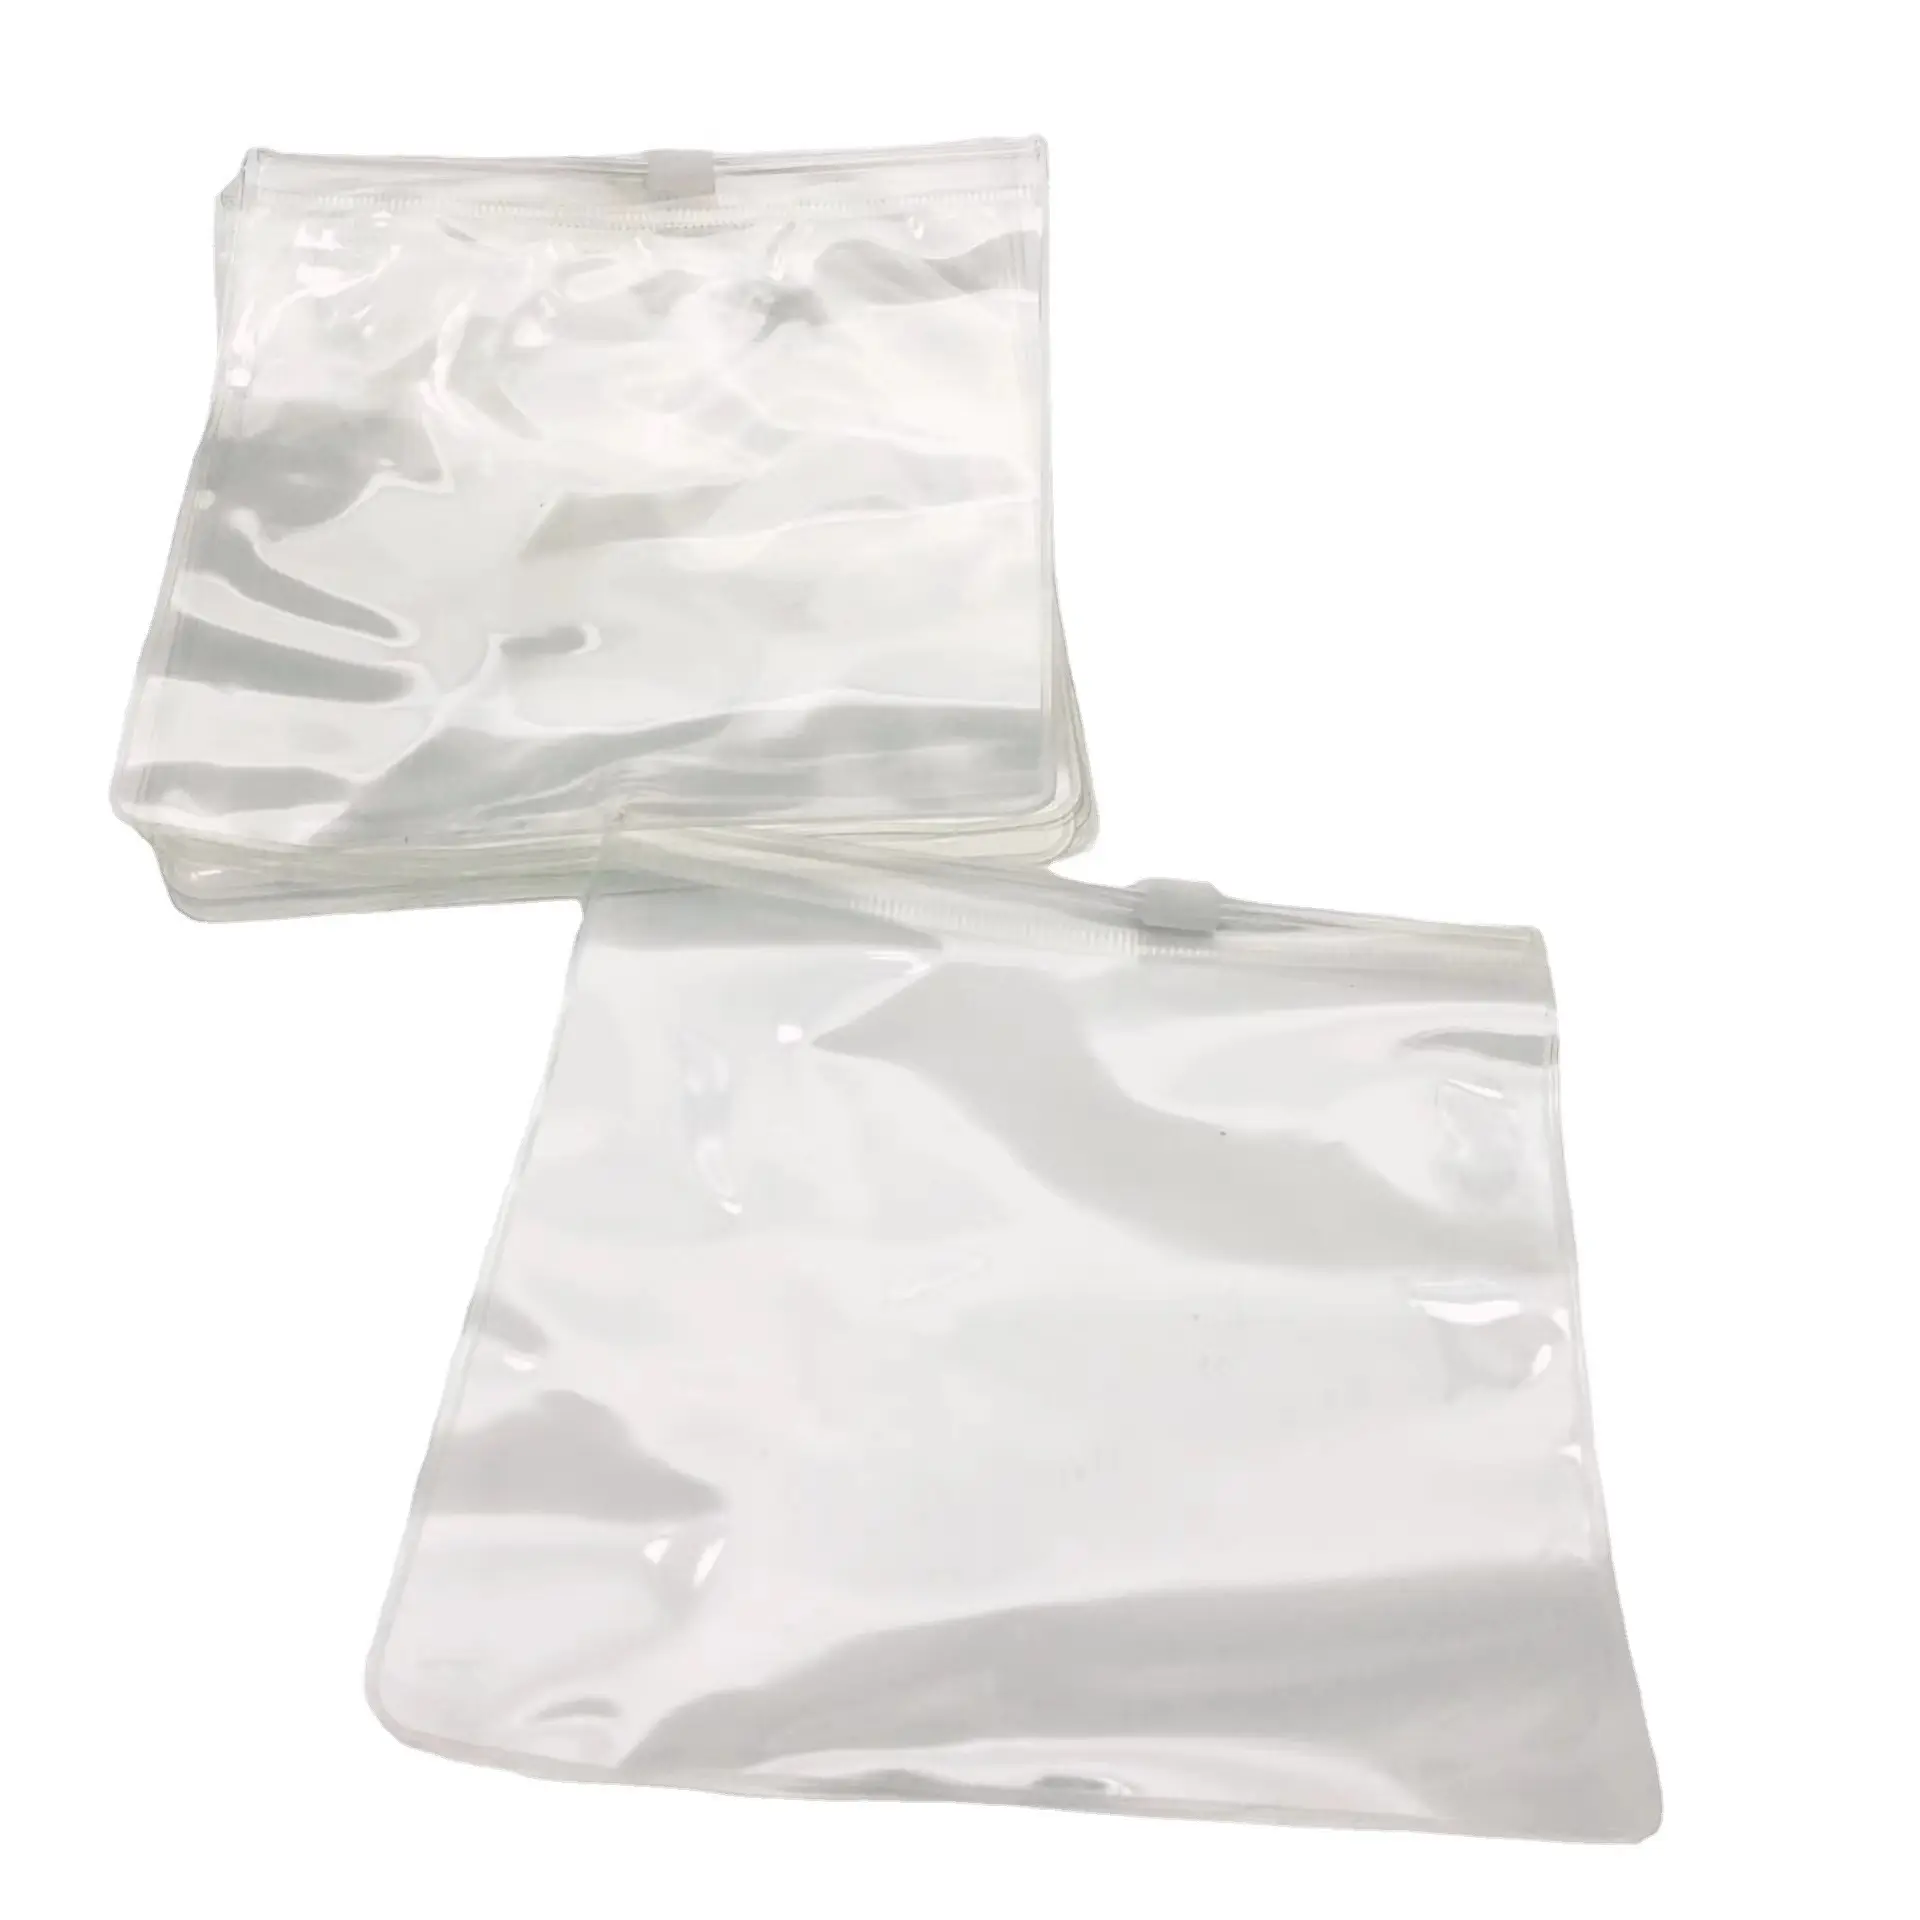 Pacote de PVC com zíper auto-selo, sacos de plástico transparente para armazenar jóias, brincos e anéis, anel anti-oxidação, pacote com pequenos itens reutilizáveis